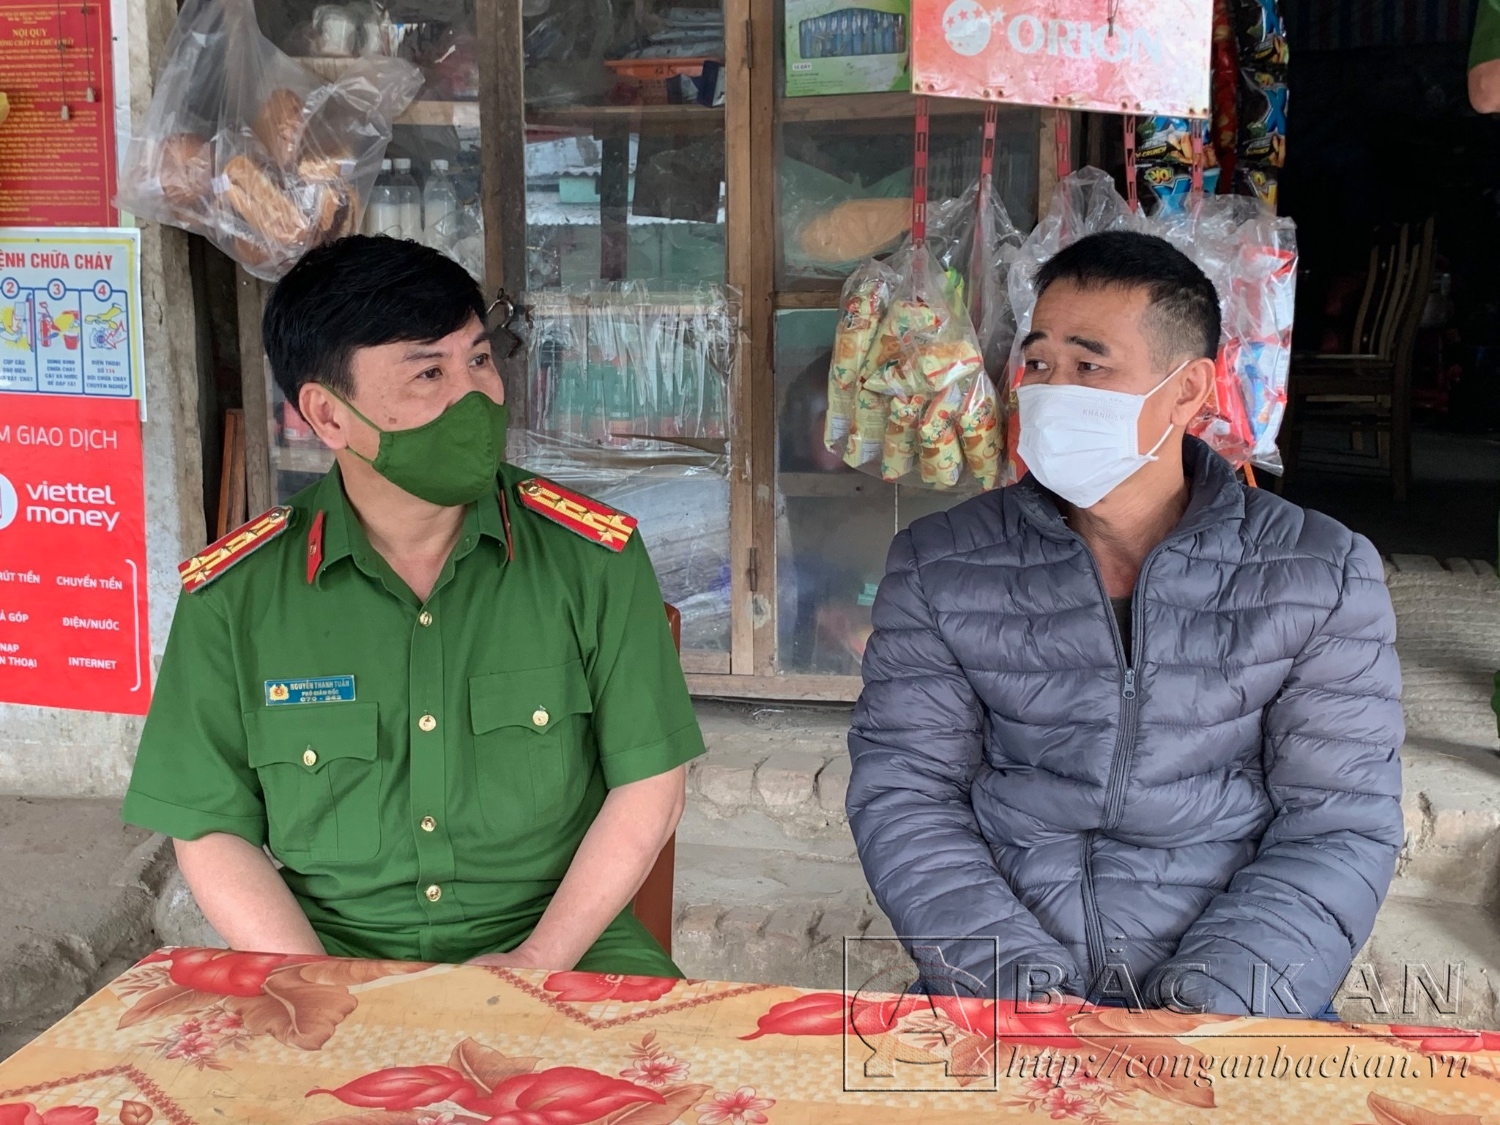 Đại tá Nguyễn Thanh Tuân, Phó Giám đốc Công an tỉnh, thăm gia đình ông Đặng Ngọc Hùng, thôn khuổi thiêu xã Quân Hà, huyện Bạch Thông là người đã từng lầm lỗi.